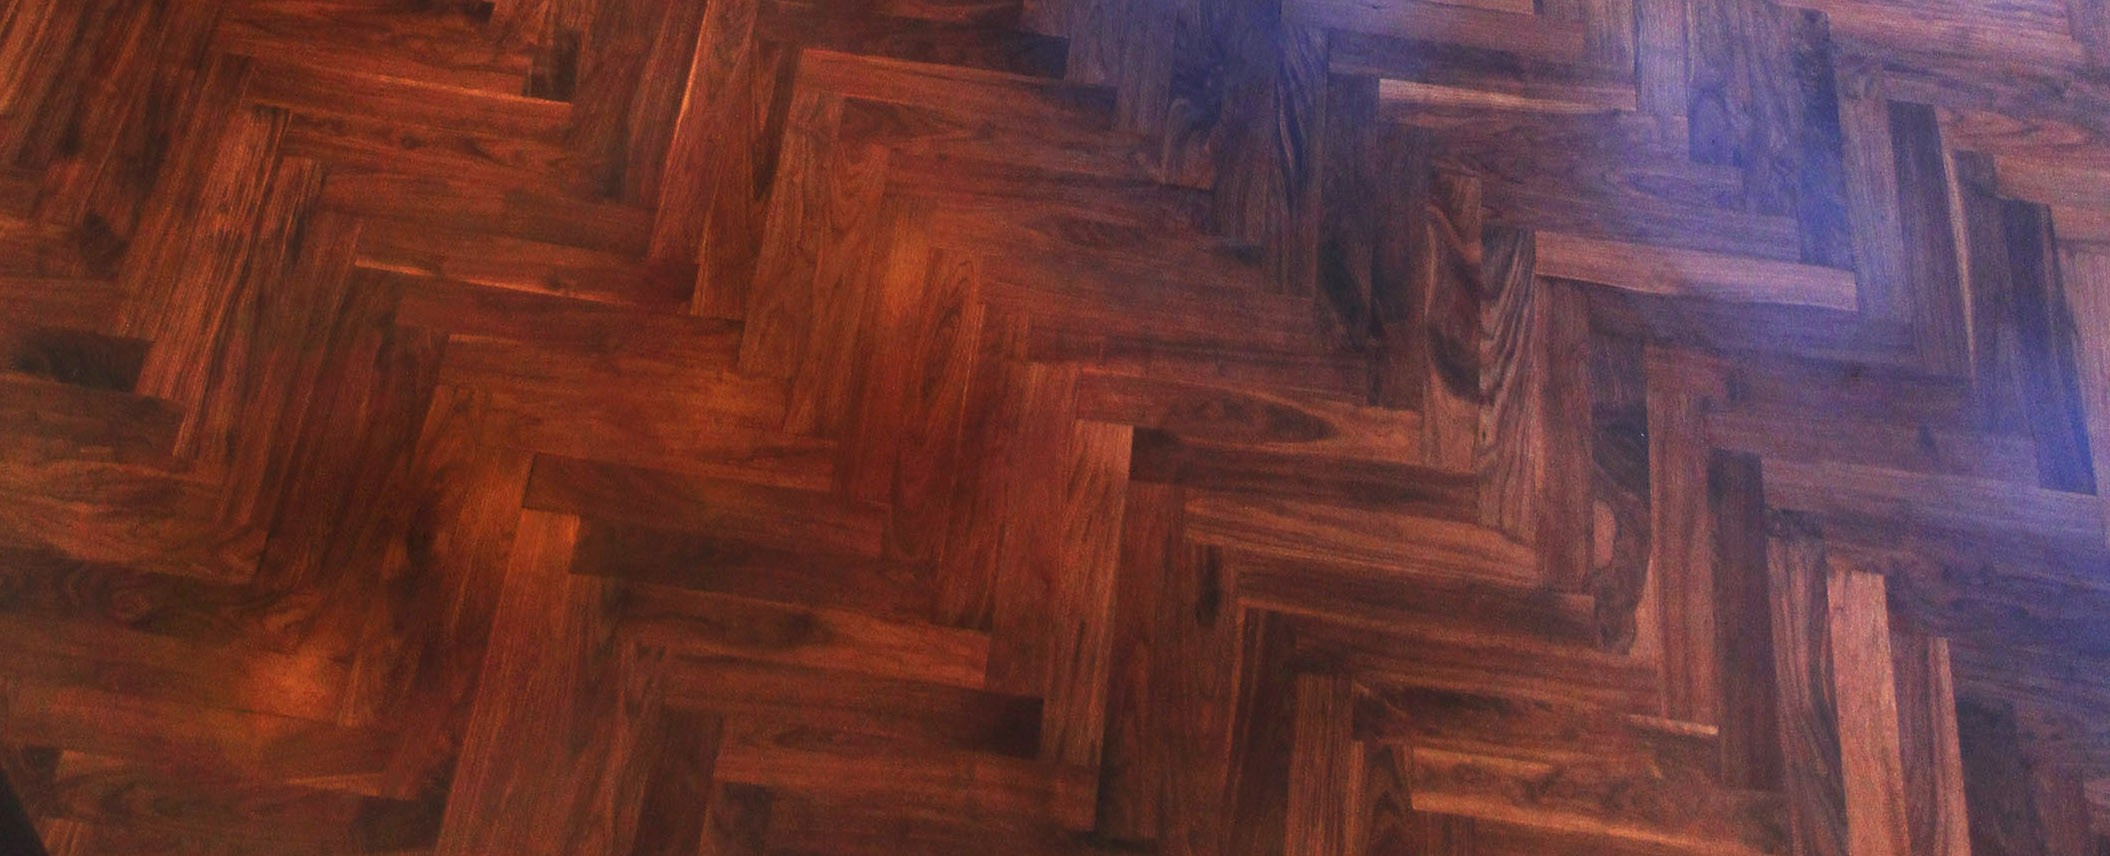 Herringbone Flooring: Why We Love This Hardwood Pattern